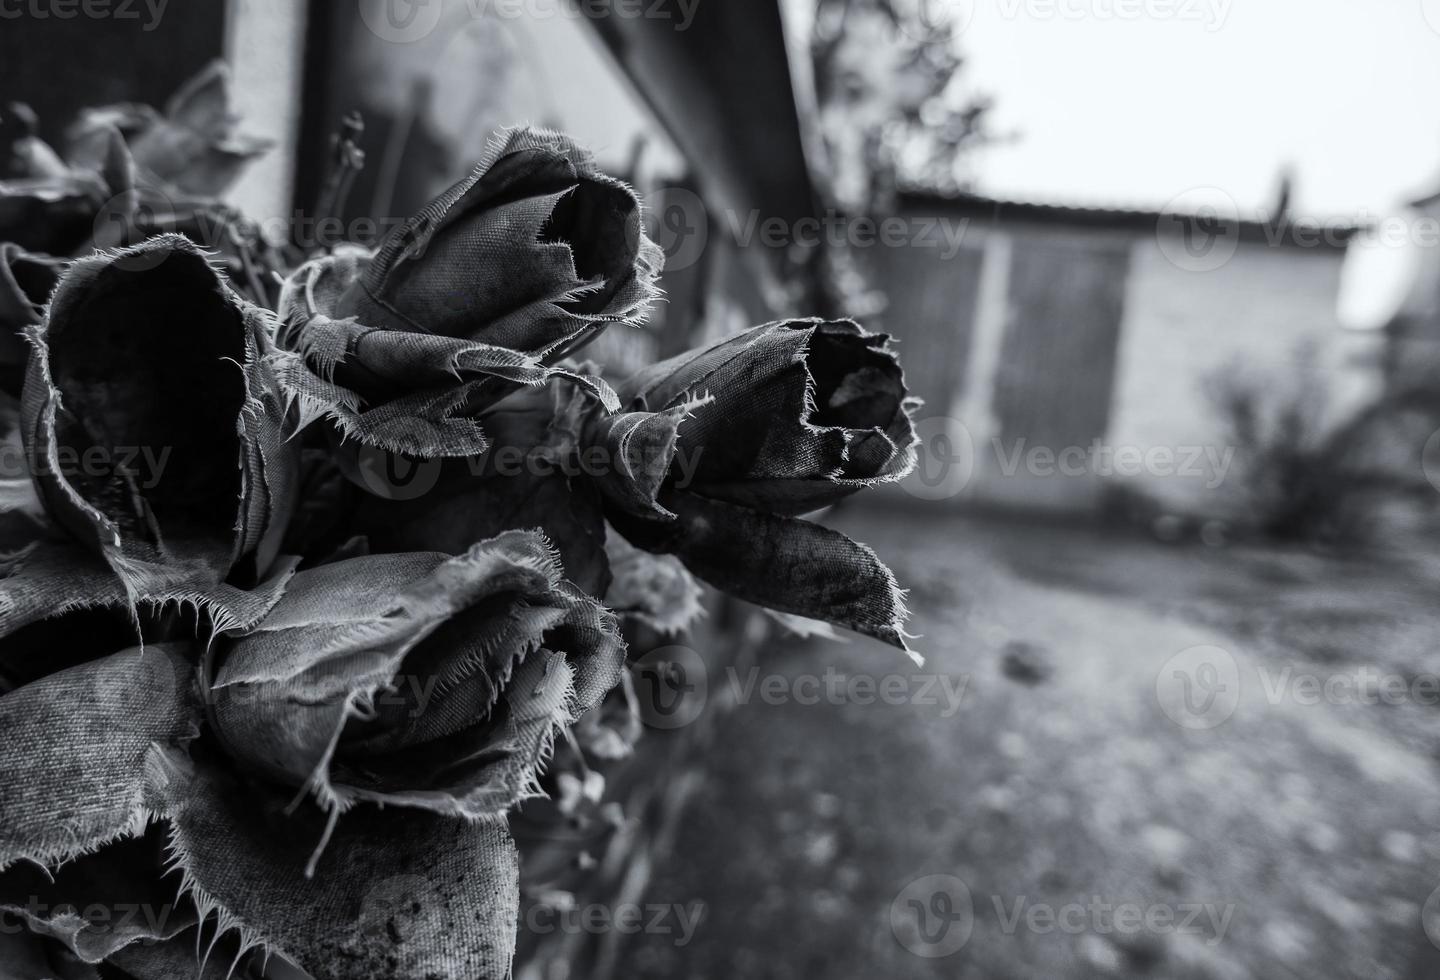 roses sèches au cimetière photo